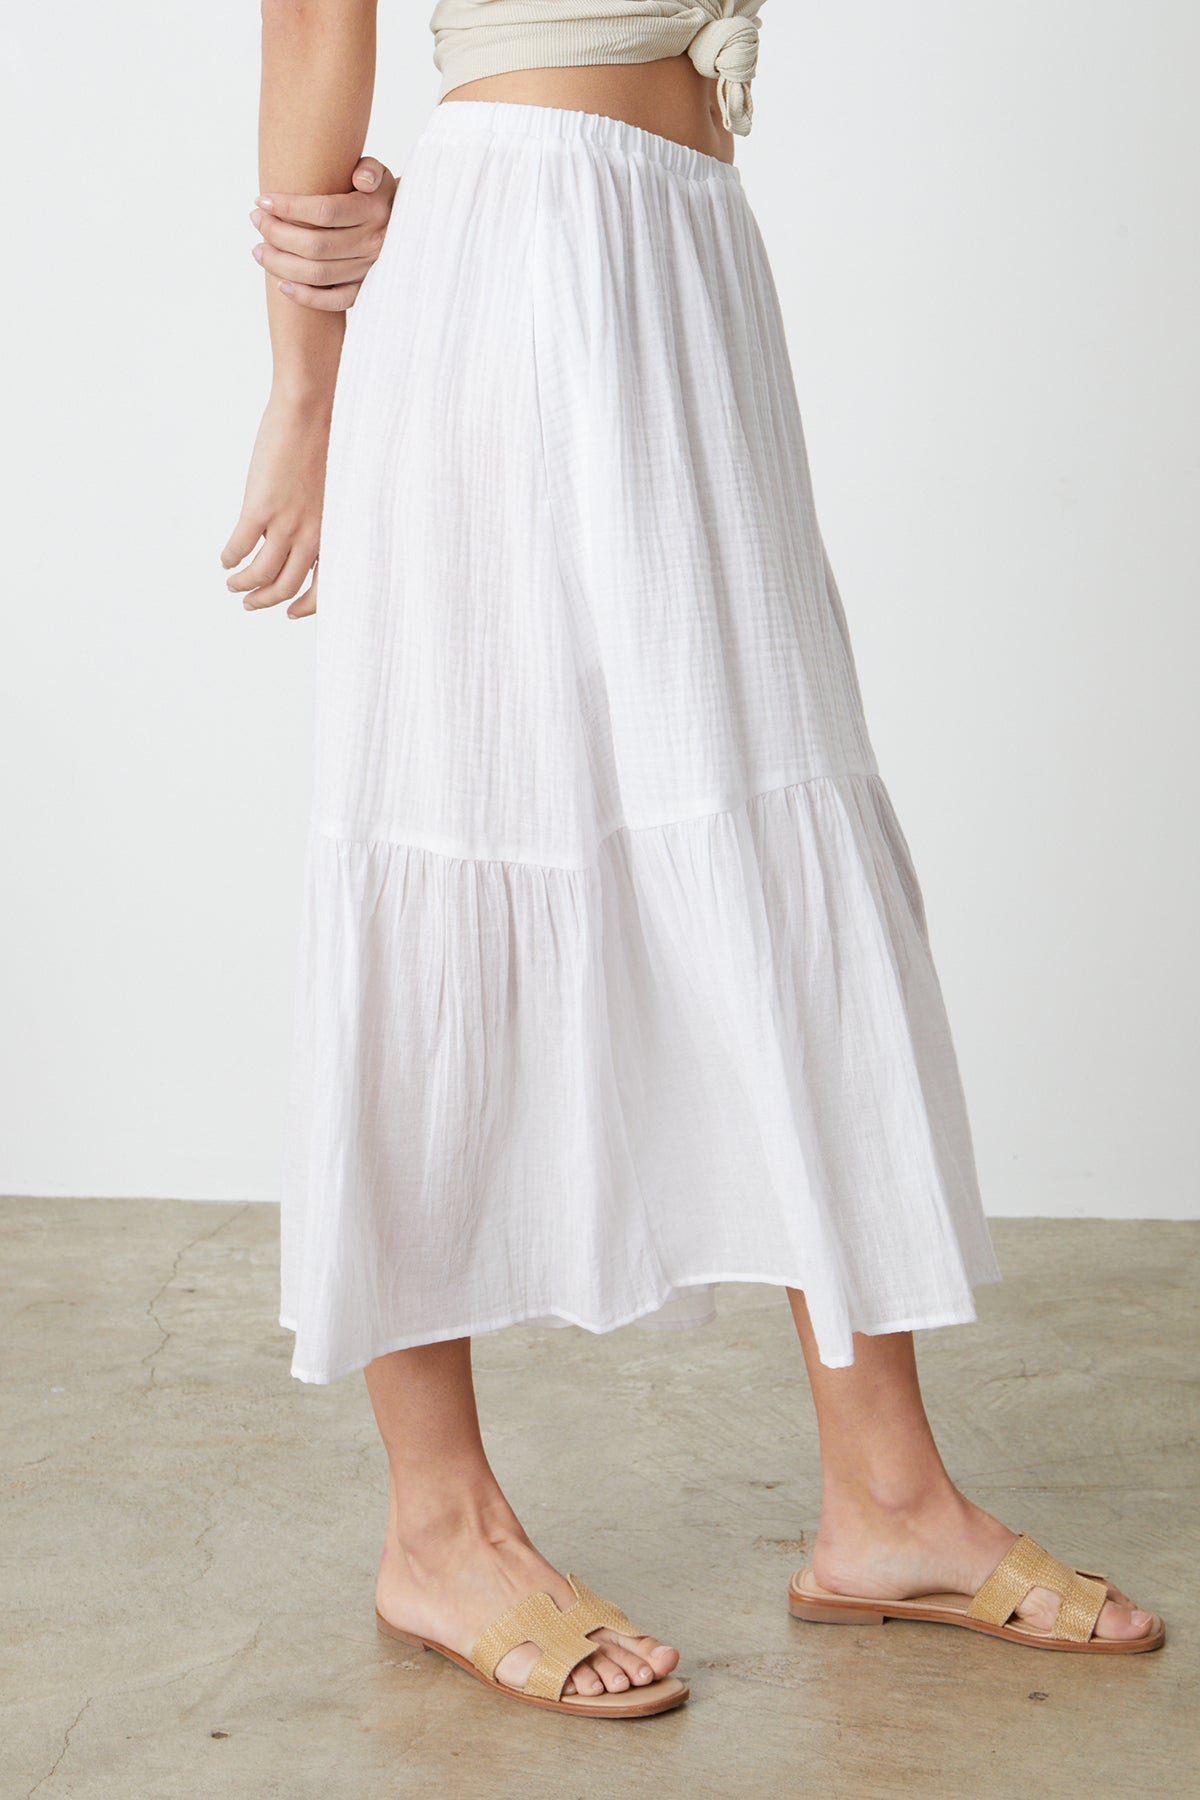 Mckenna Tiered Skirt in white side-26255713665217